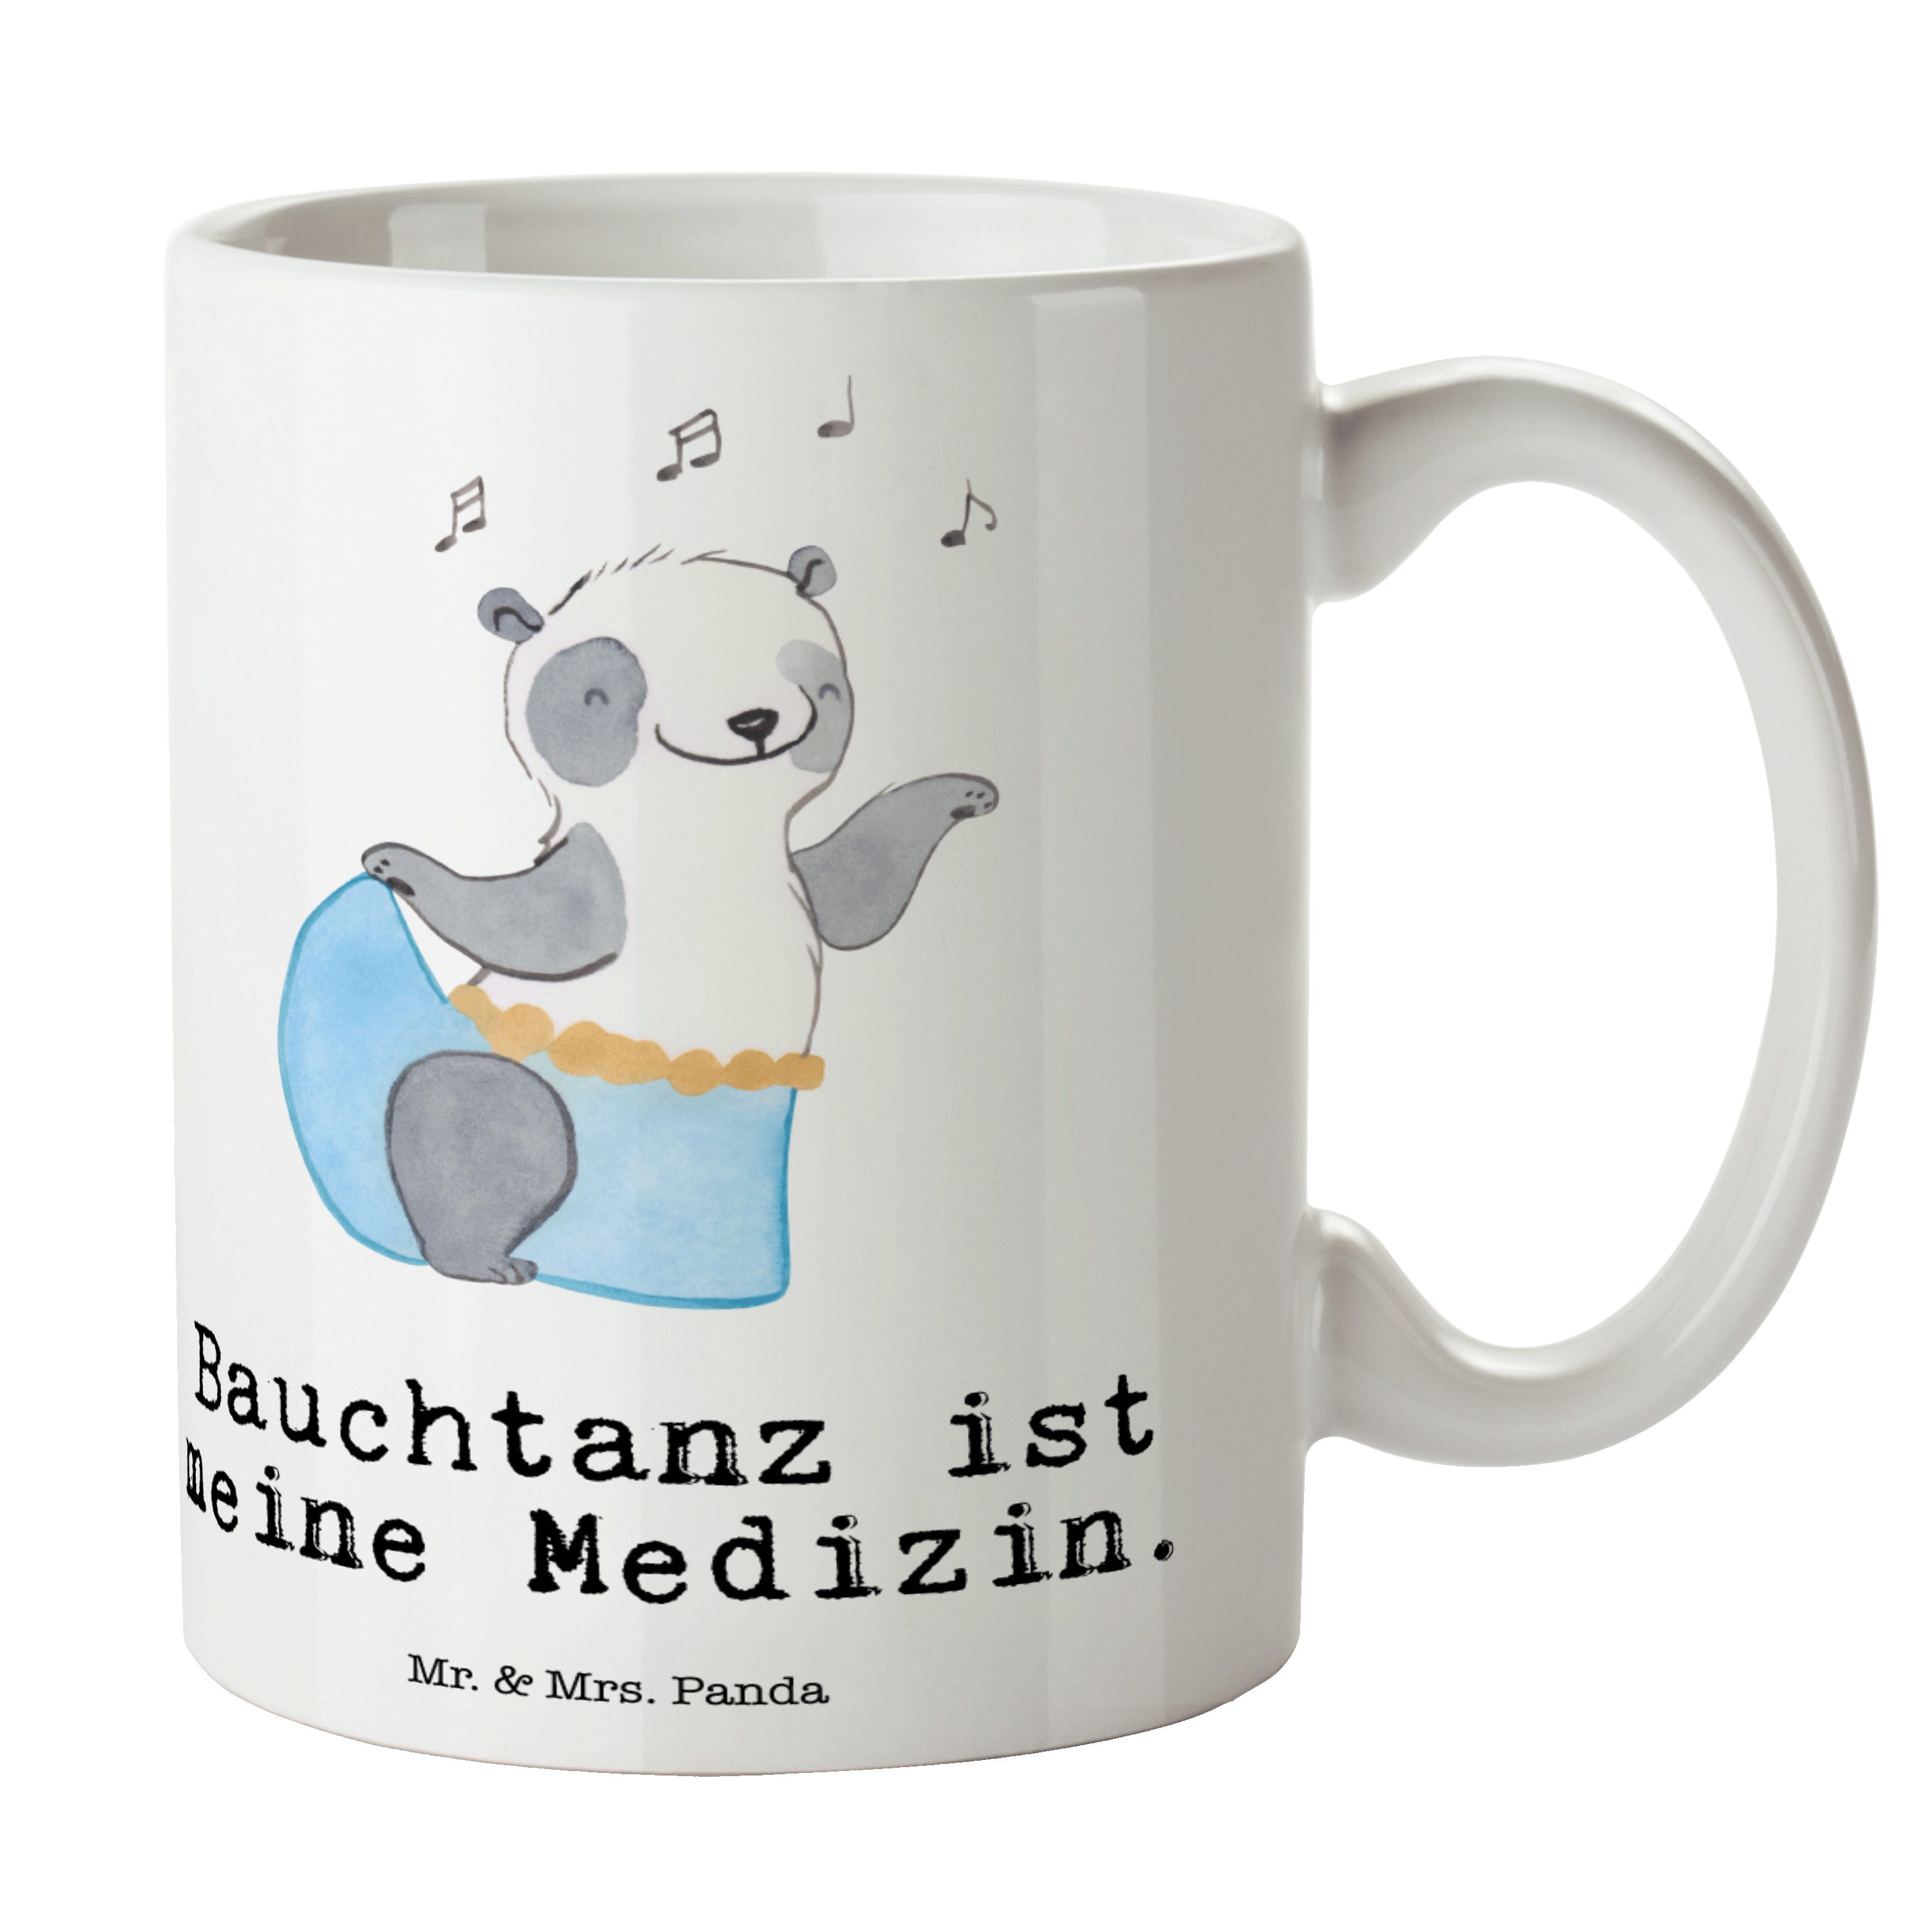 Mr. & Mrs. Panda Tasse Panda Bauchtanz Medizin - Weiß - Geschenk, Danke, Dankeschön, orienta, Keramik